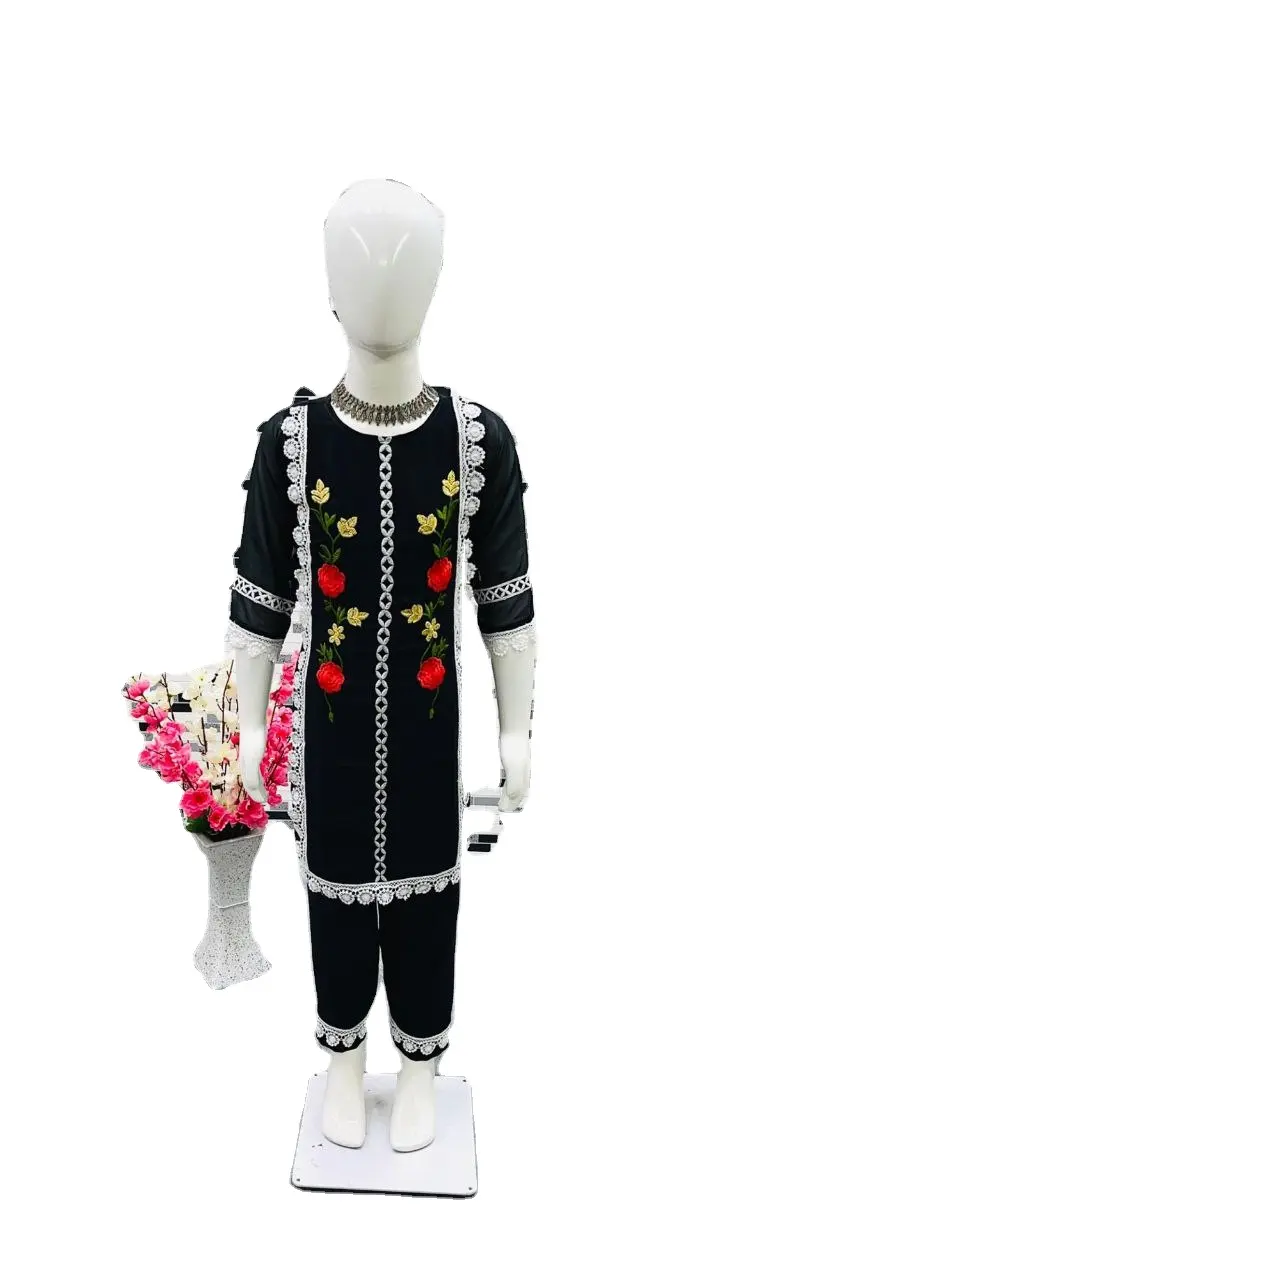 2022, оптовая продажа, Пакистанская повседневная одежда для девочек, хлопковый костюм с клапаном для дня рождения, Специальная праздничная одежда